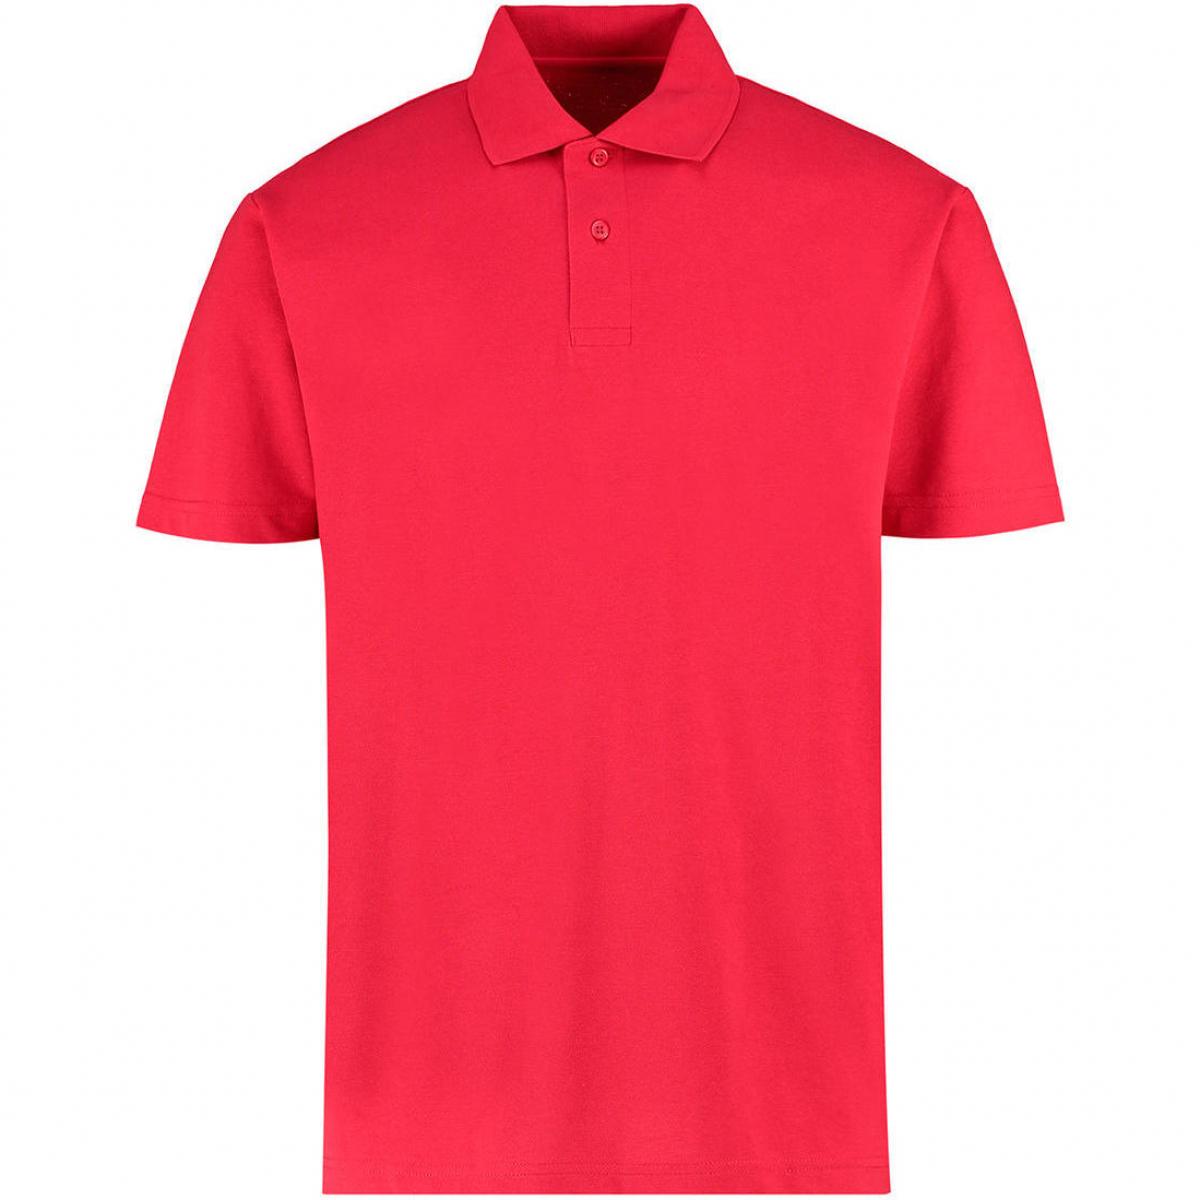 Hersteller: Kustom Kit Herstellernummer: KK422 Artikelbezeichnung: Men's Regular Fit Workforce Poloshirt für Herren Farbe: Red